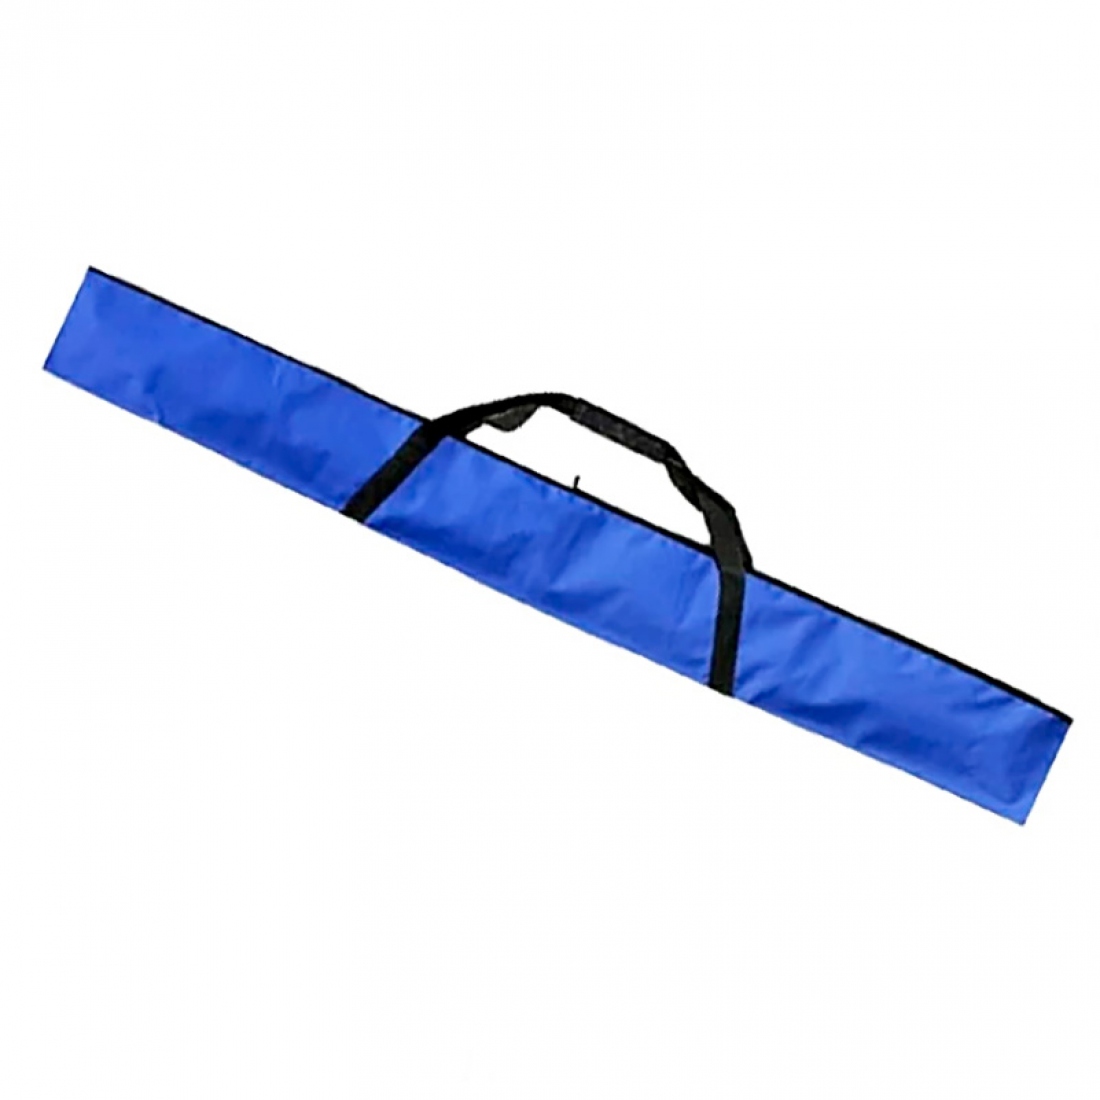 Чехол для беговых лыж, длина 195 см, цвет синий, производство Россия